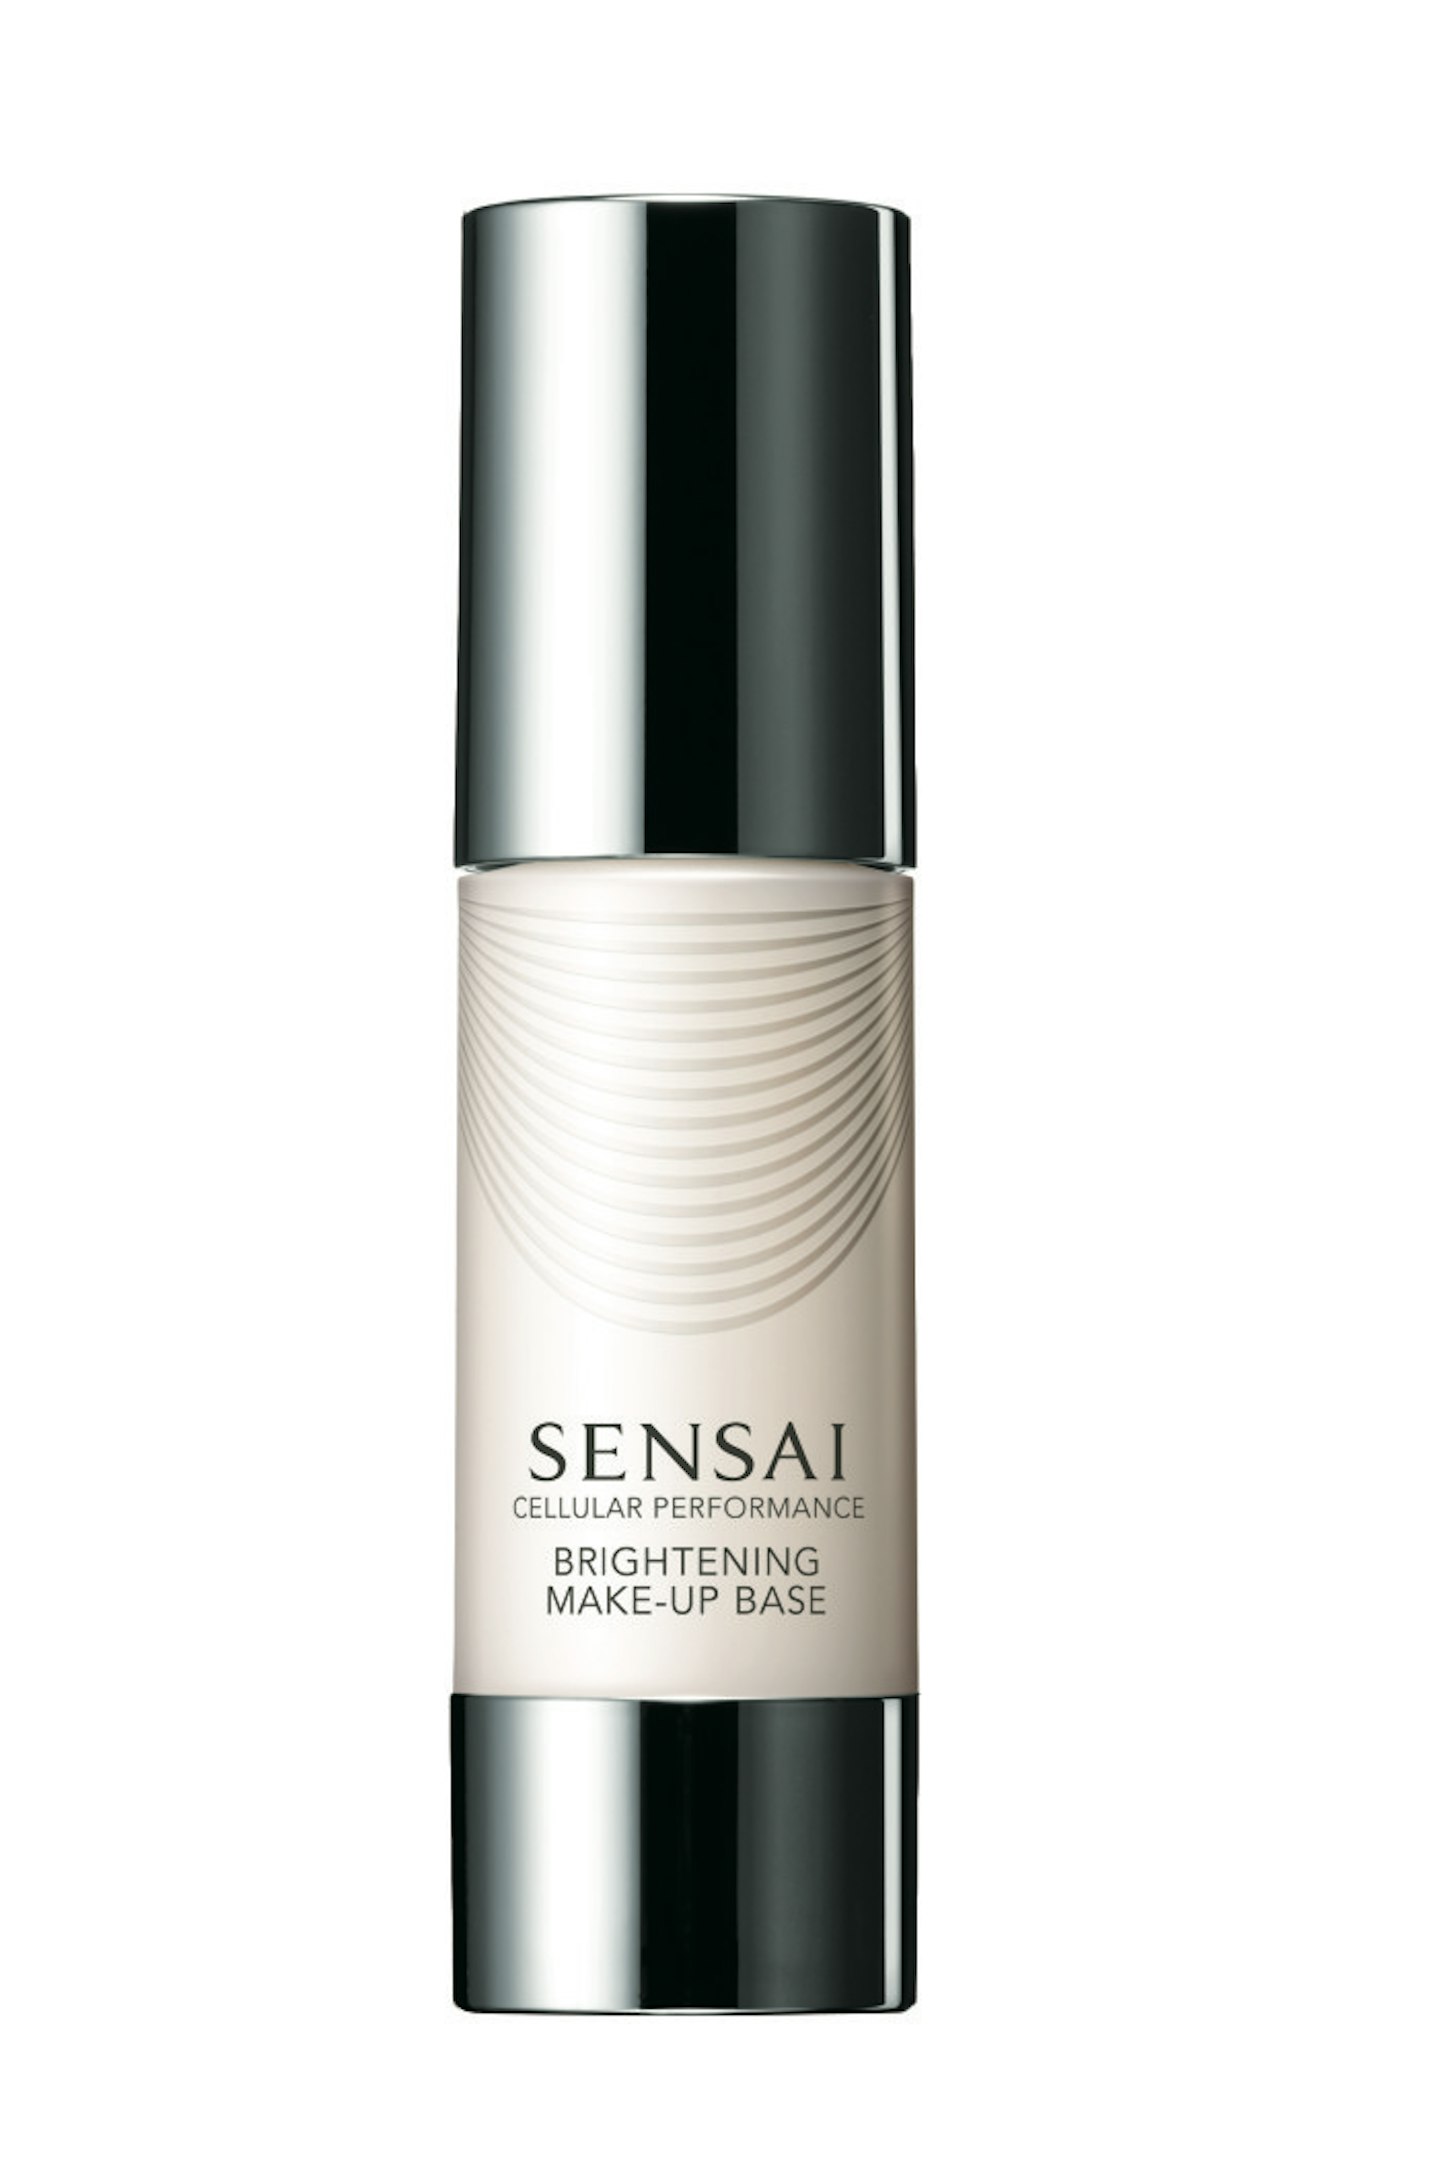 Sensai Brightening Make-Up Base, £54.00